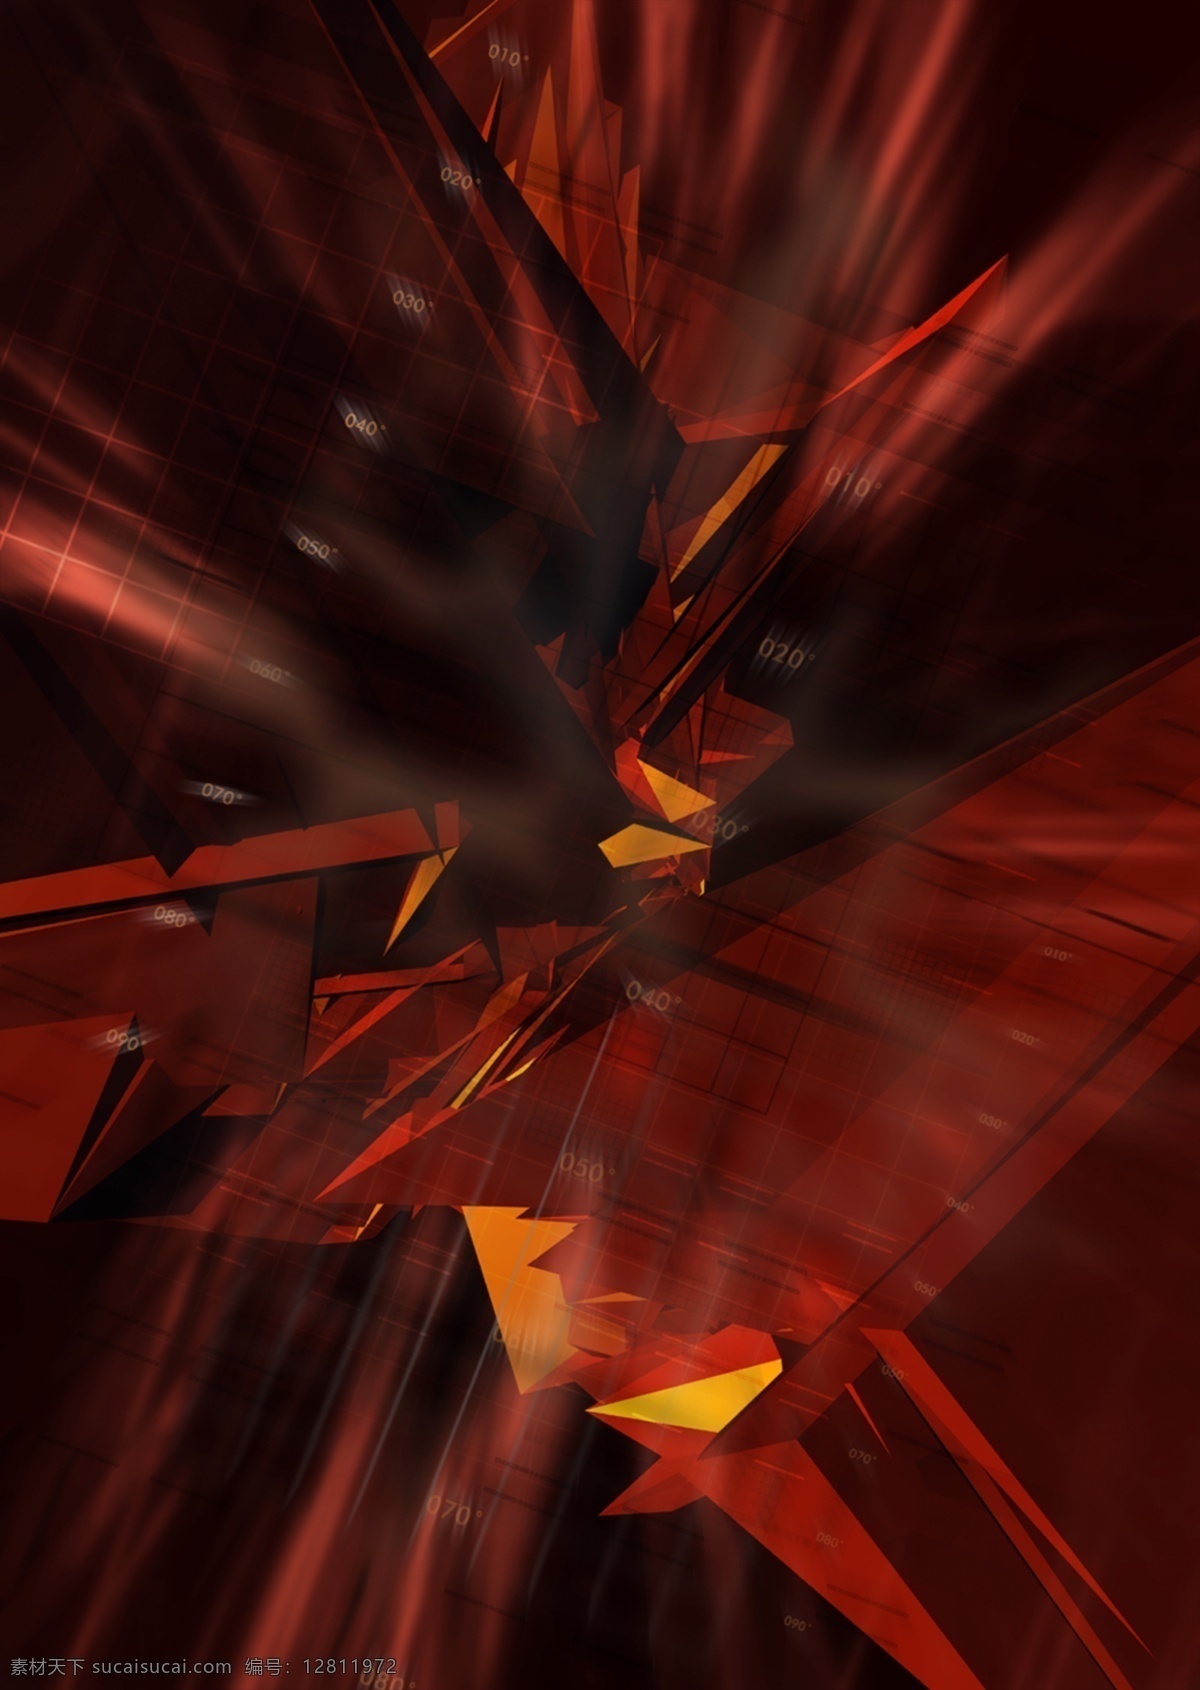 数码 游戏背景 分层 红色警戒 3d 抽象 底纹 动感 黑暗 后现代 科技 力量 梦幻 游戏背景设计 前卫 异度空间 速度 艺术 张力 原创设计 其他原创设计